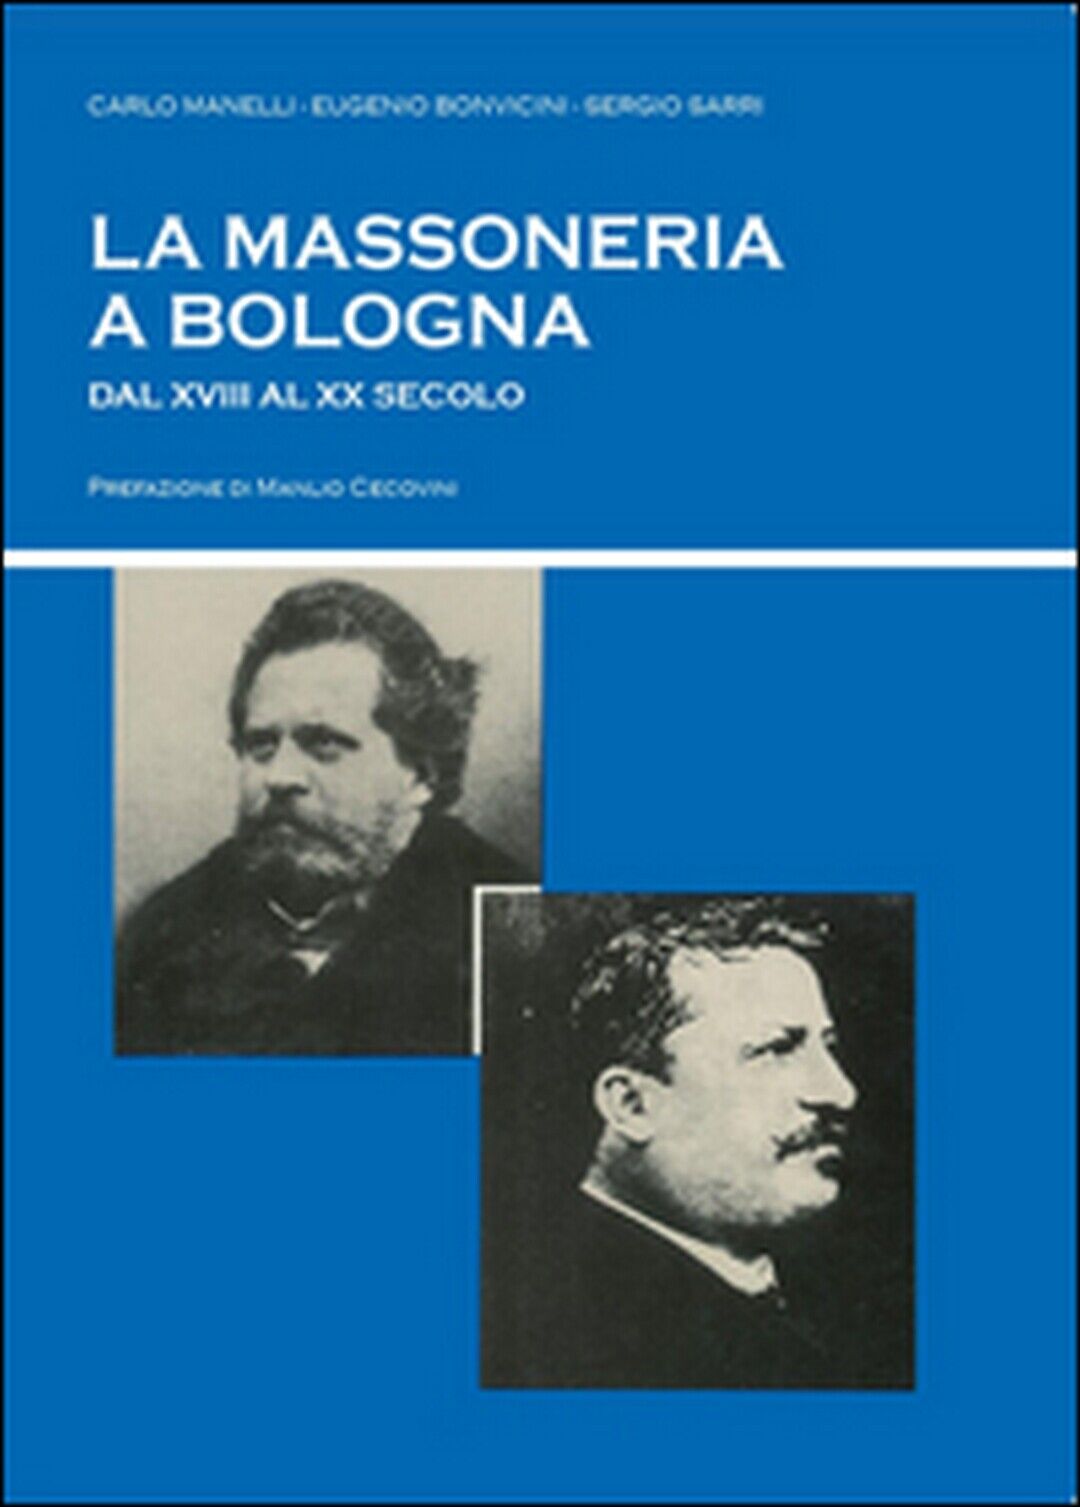 La massoneria a Bologna dal XVIII al XX secolo  (Sarri, Bonvicini, Manelli) libro usato